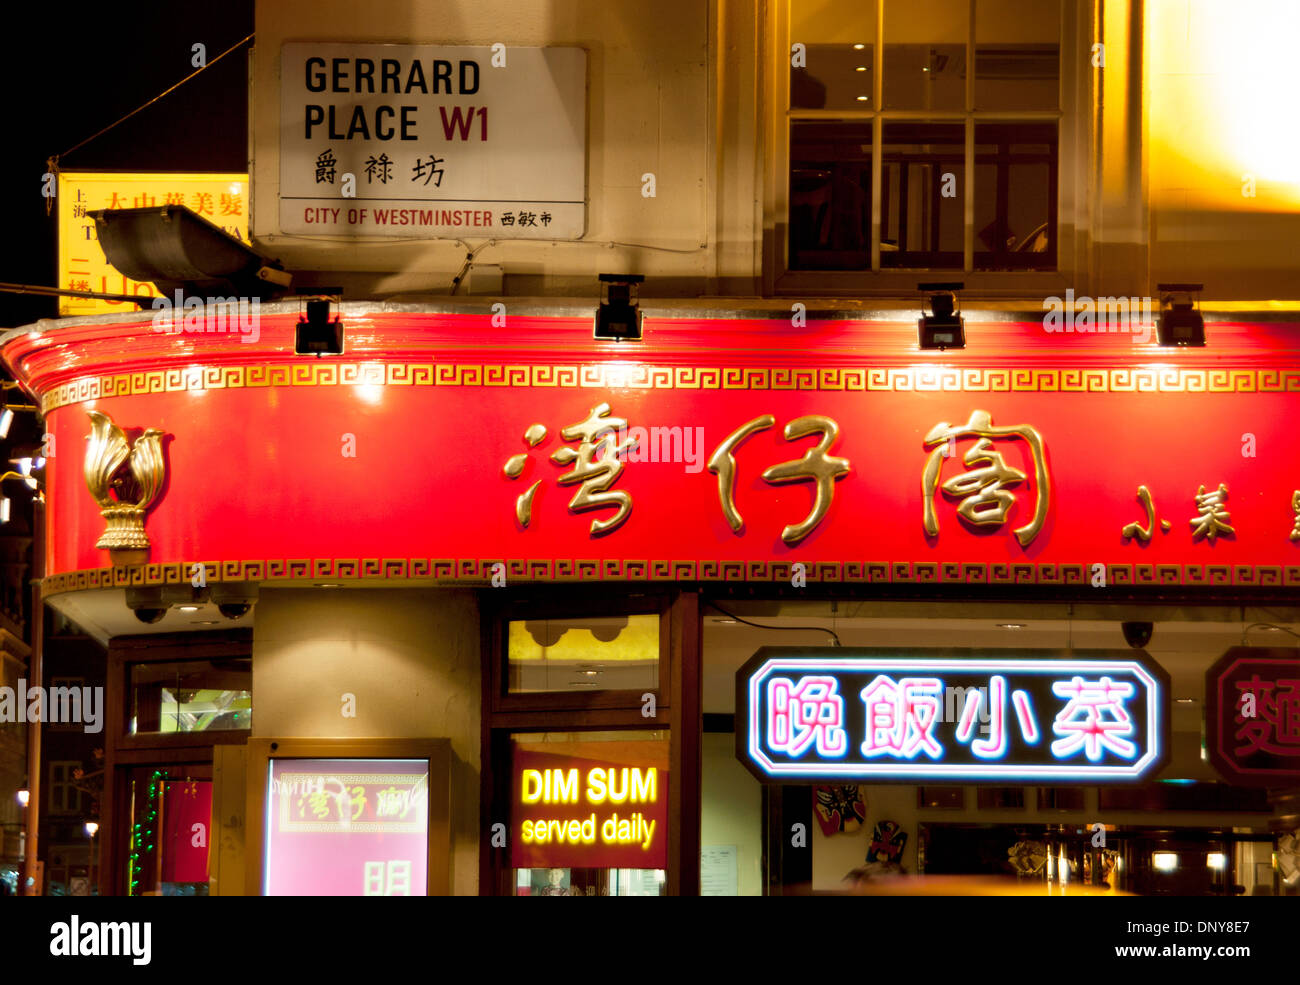 Chinatown restaurant Dim Sum et la signalisation de nuit Gerrard Place London W1 England UK Banque D'Images